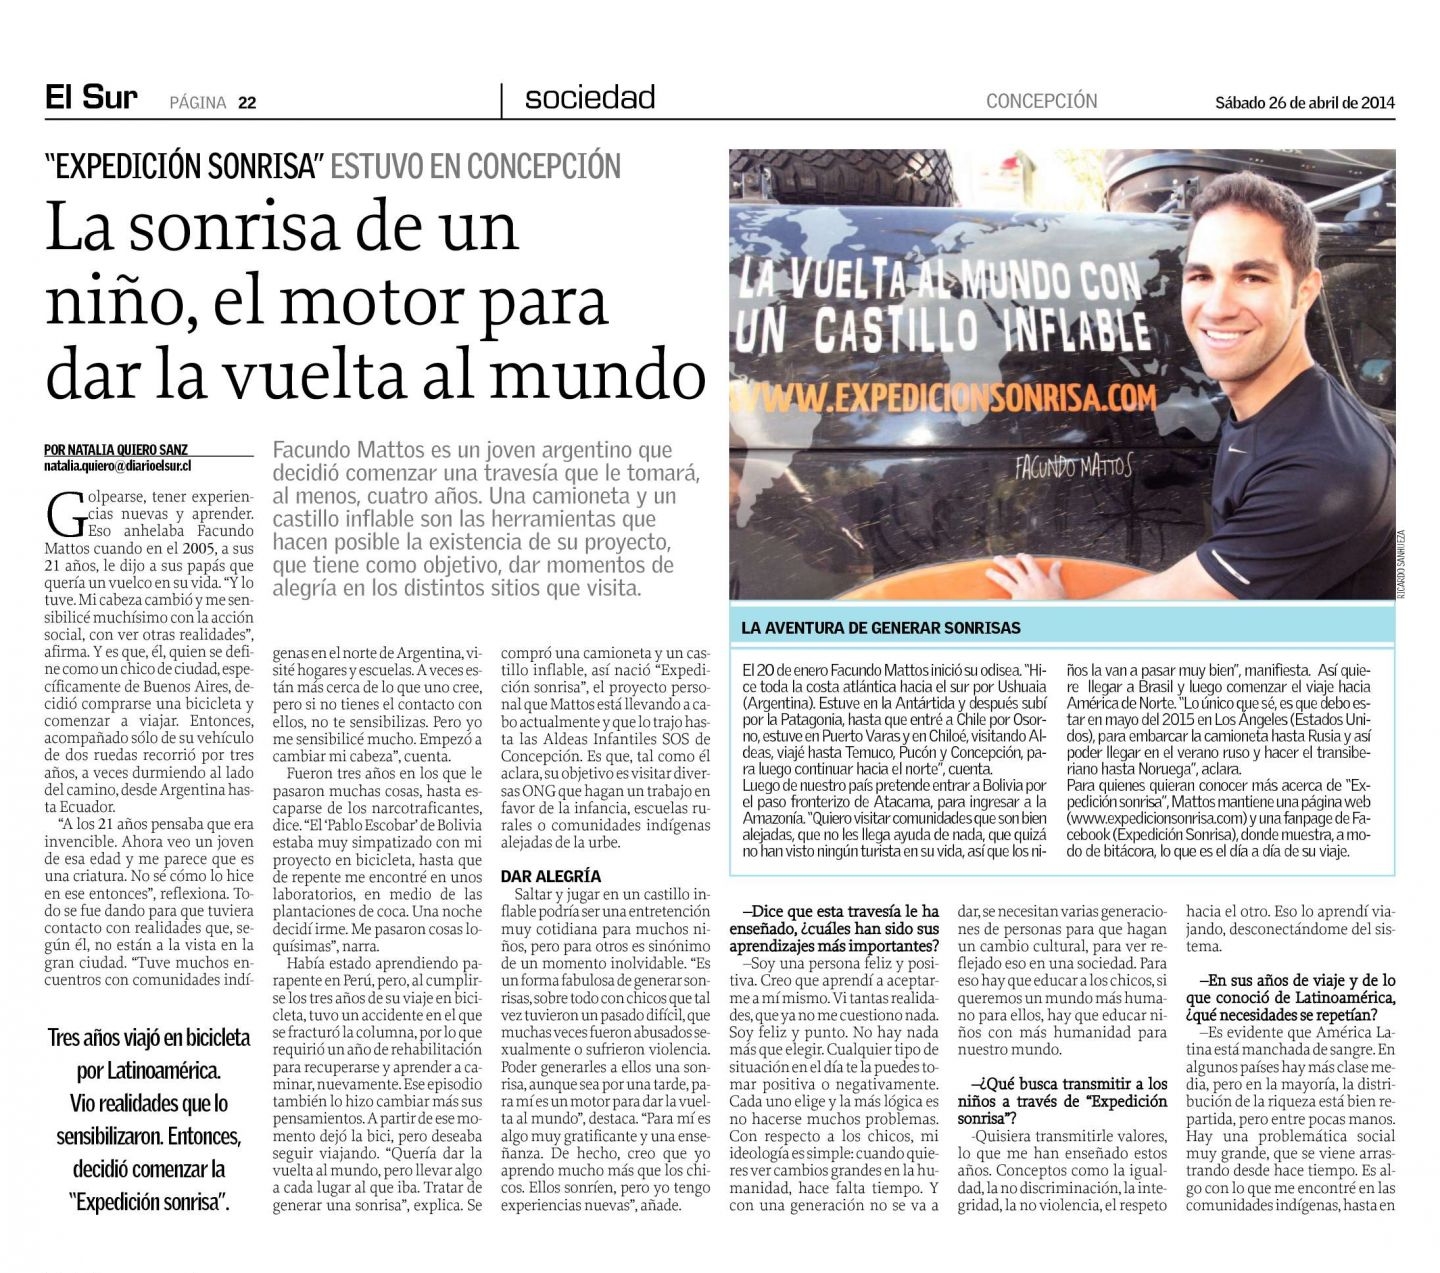 Diario El Sur de Chile: La Sonrisa de un Niño, El Motor para dar la Vuelta al Mundo